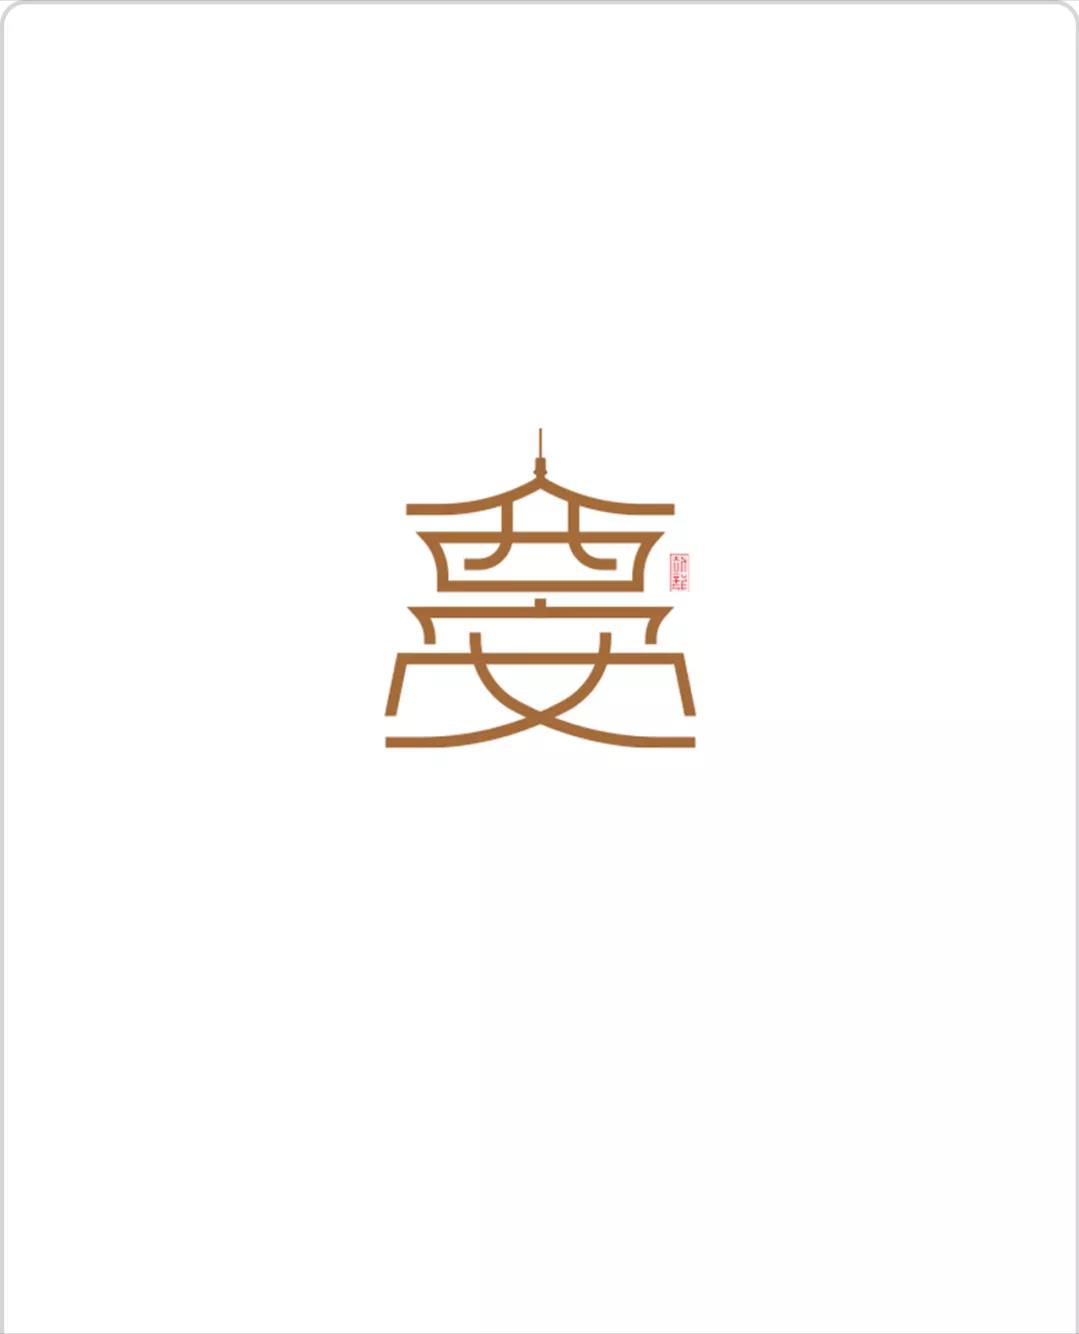 创意汉字图形设计作业图片